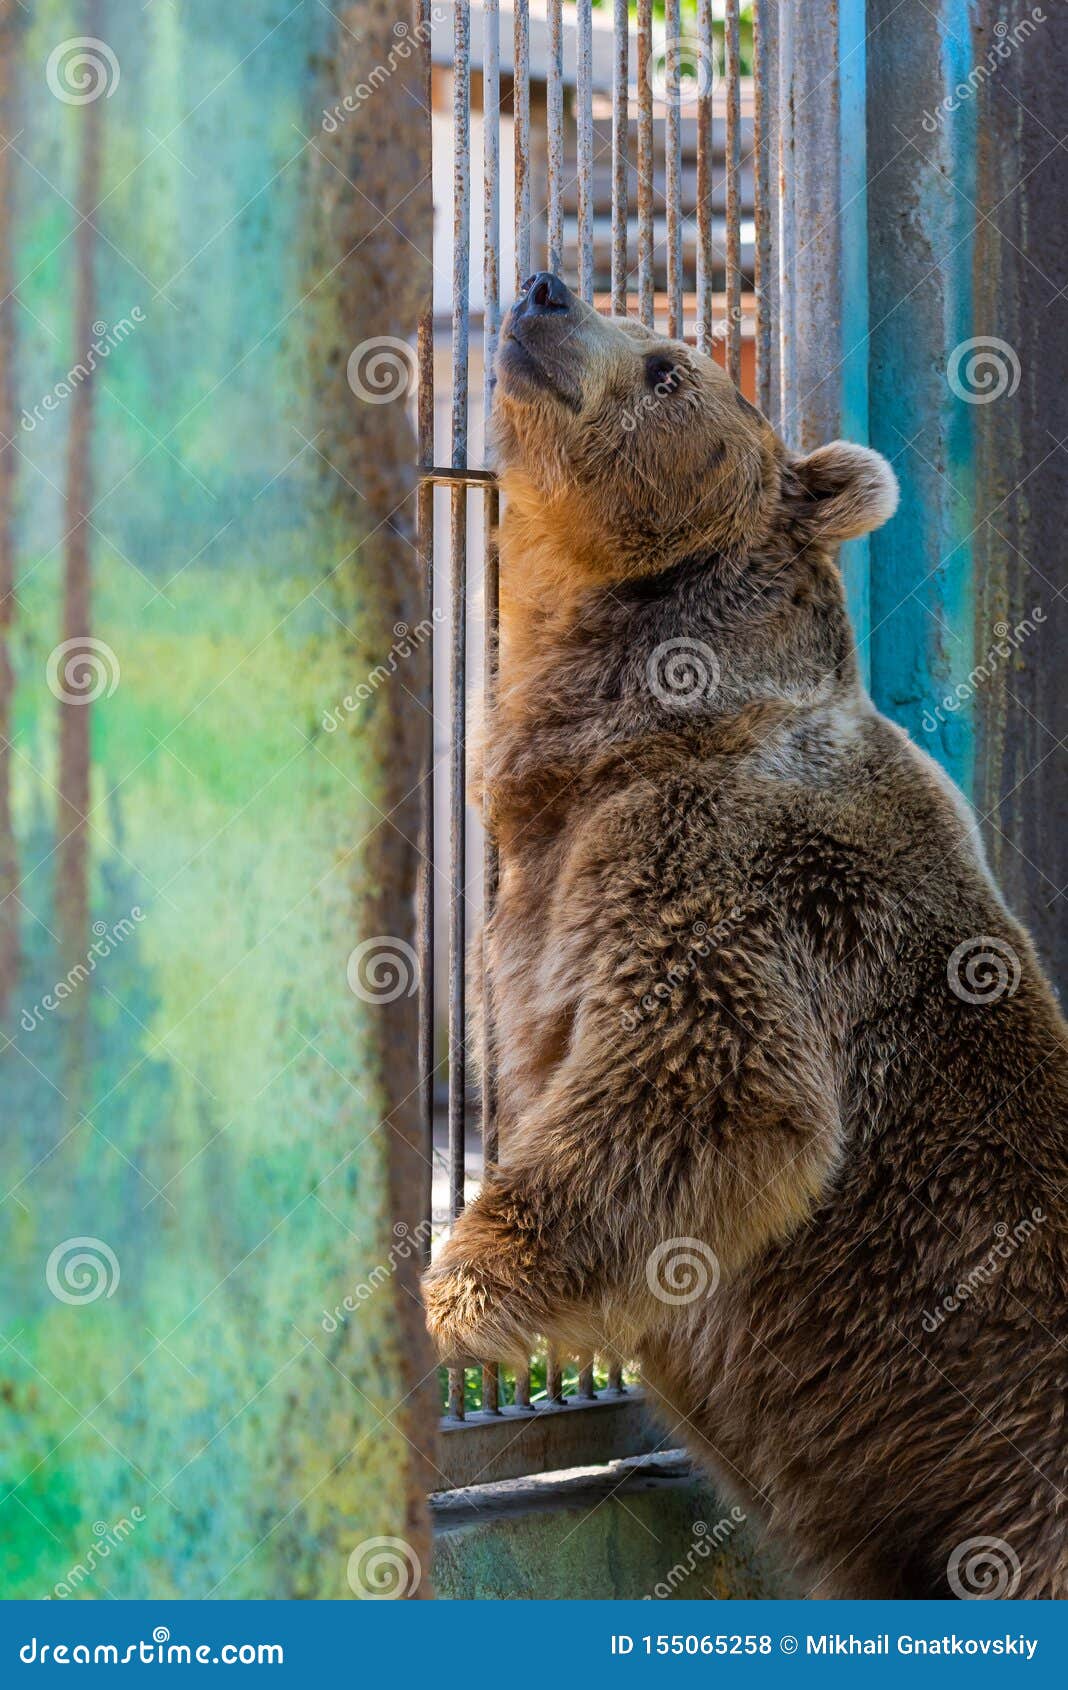 eurasian brown bear or ursus arctos arctos, also known as the european brown bear